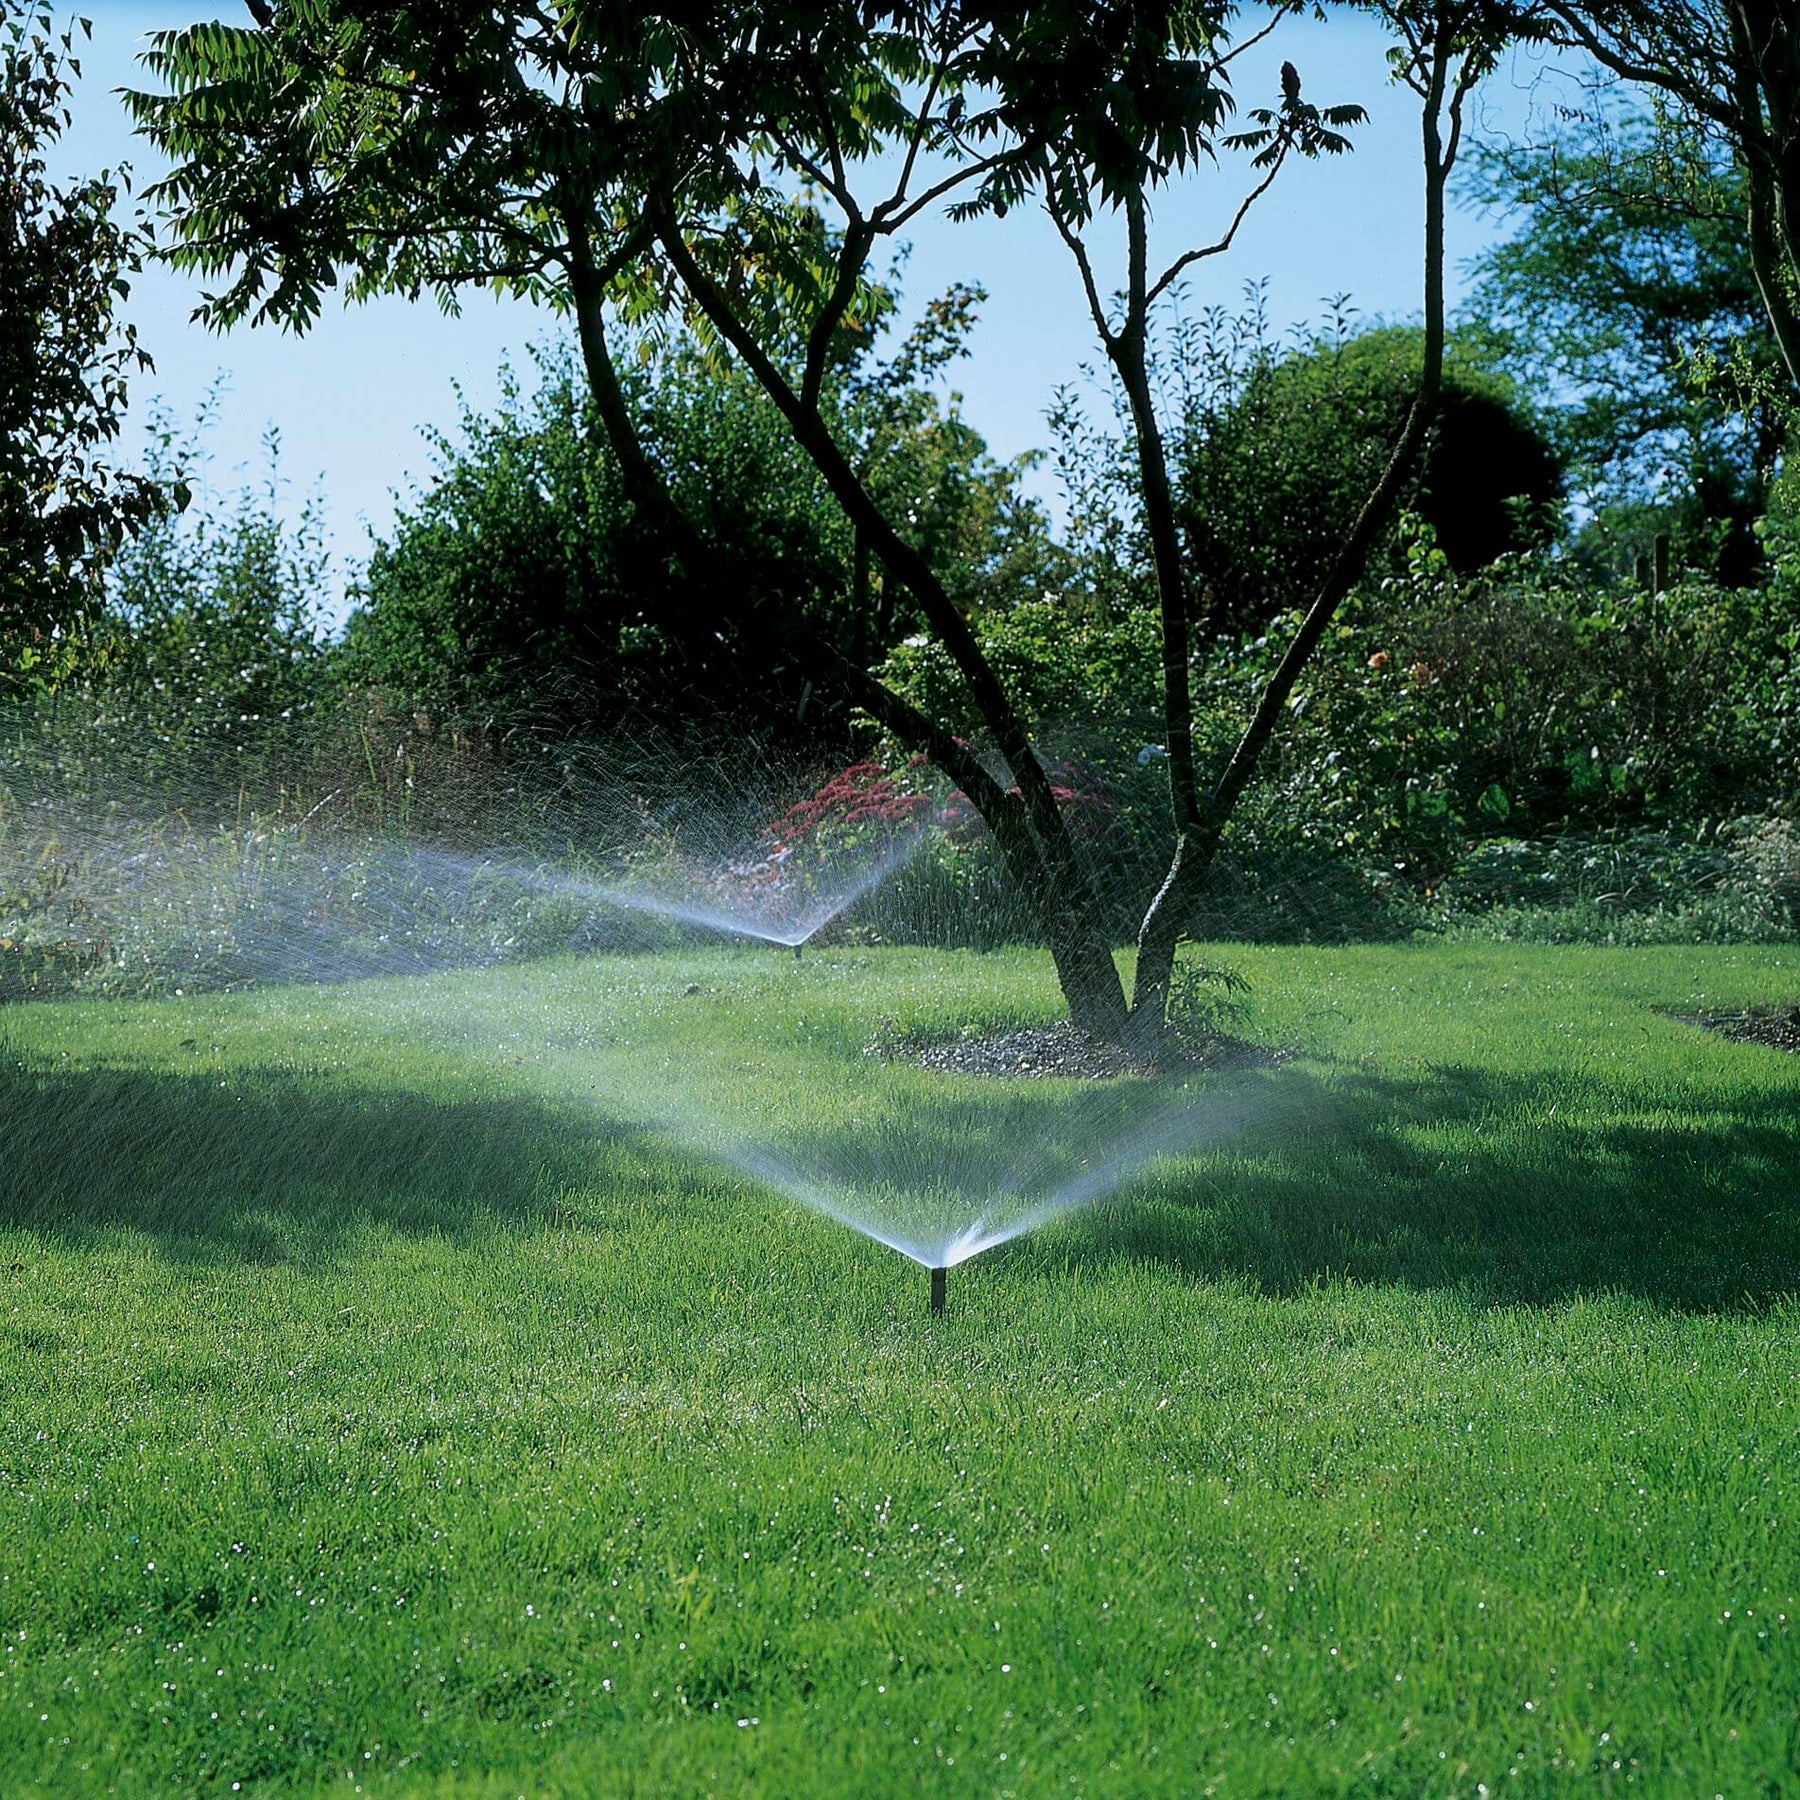 Gardena pop-up sprinkler system in action